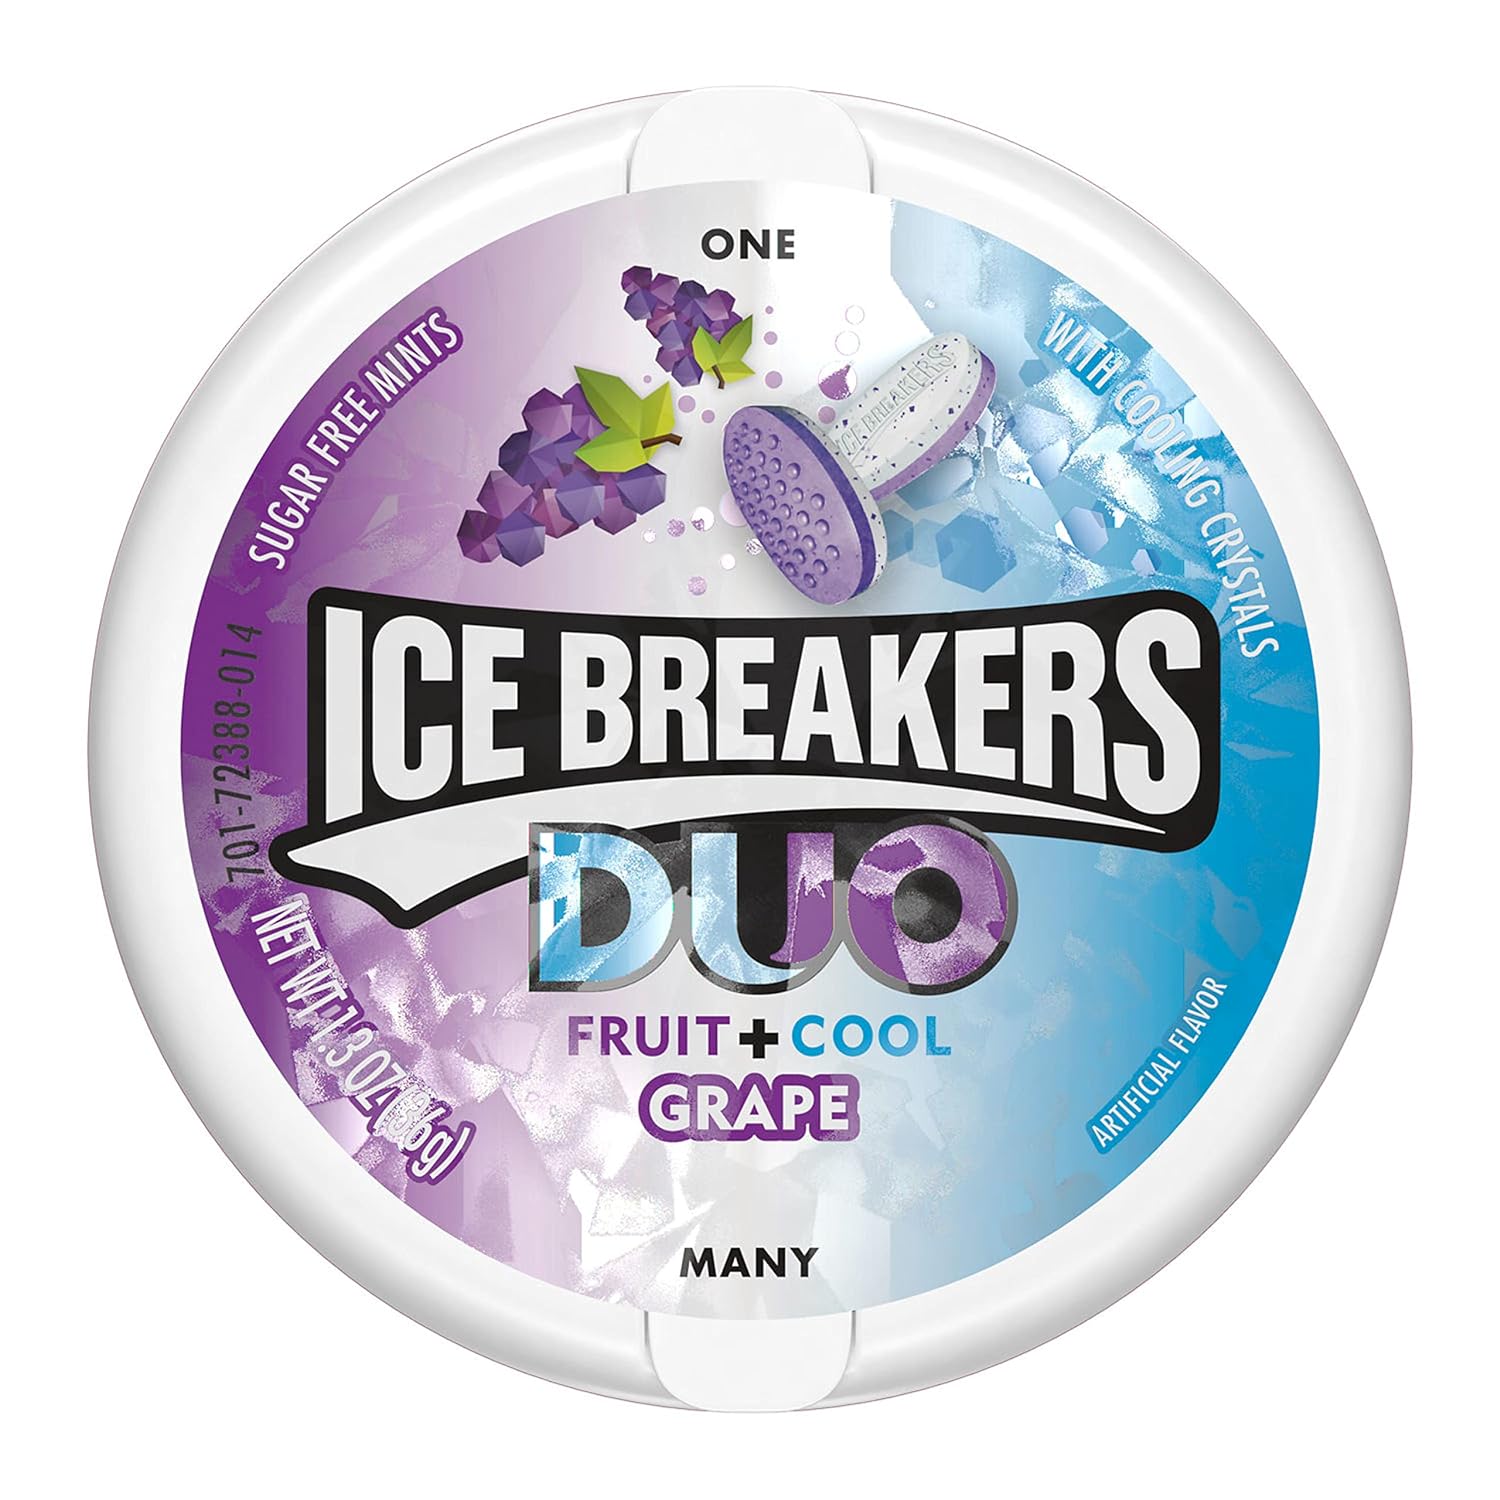 آبنبات خوشبوکننده دهان آیس بریکرز Ice Breakers با طعم انگور